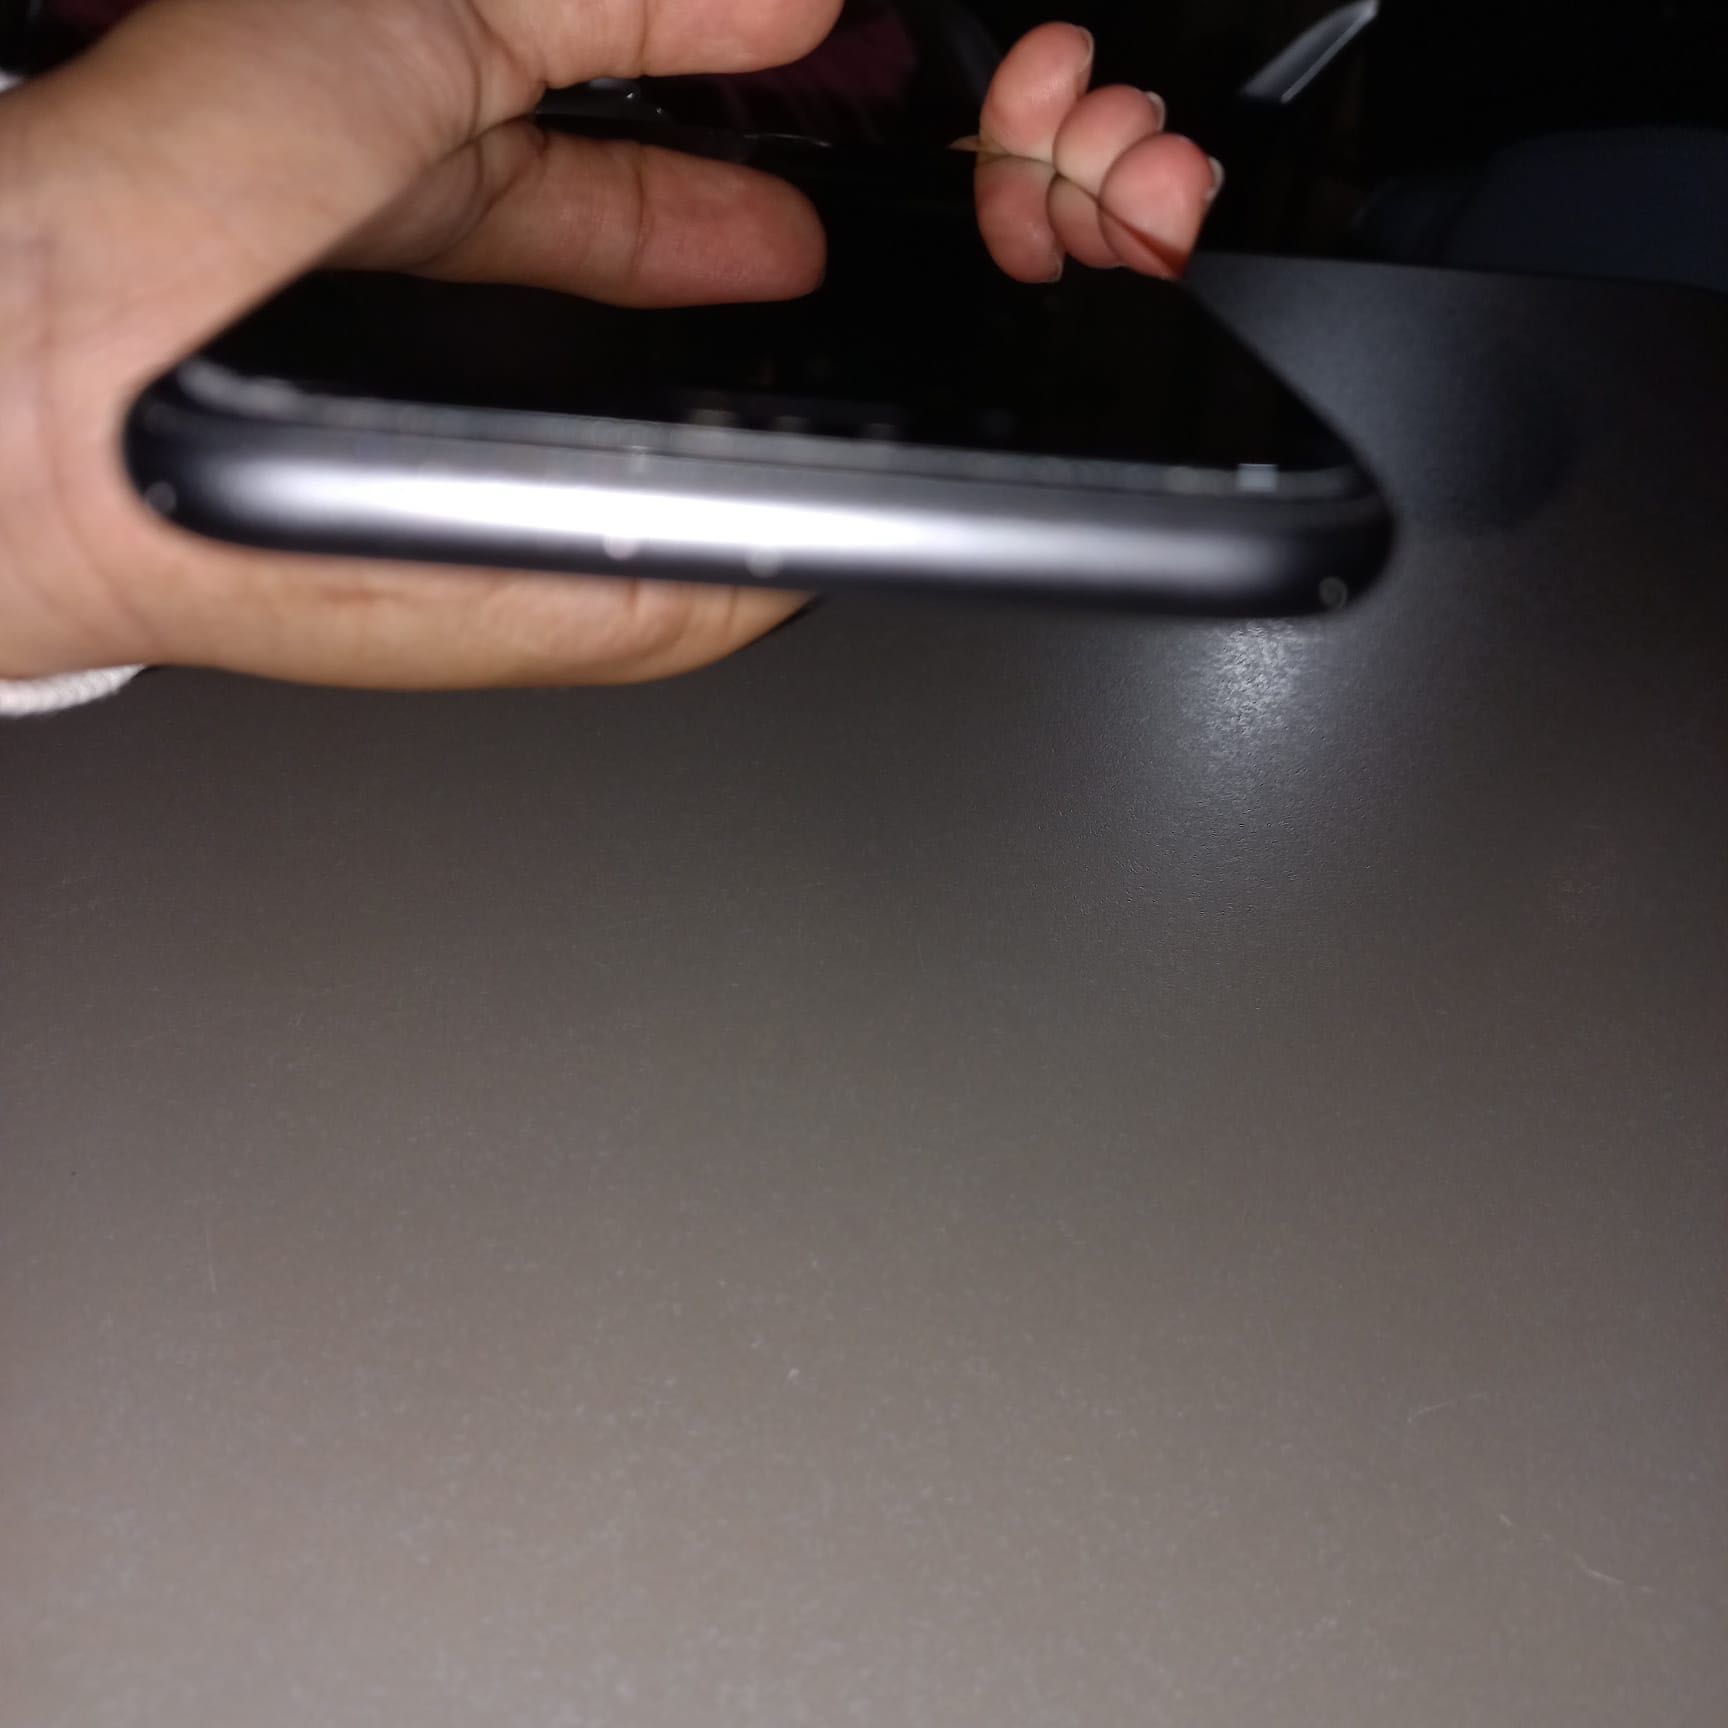 iPhone 8 cor preto